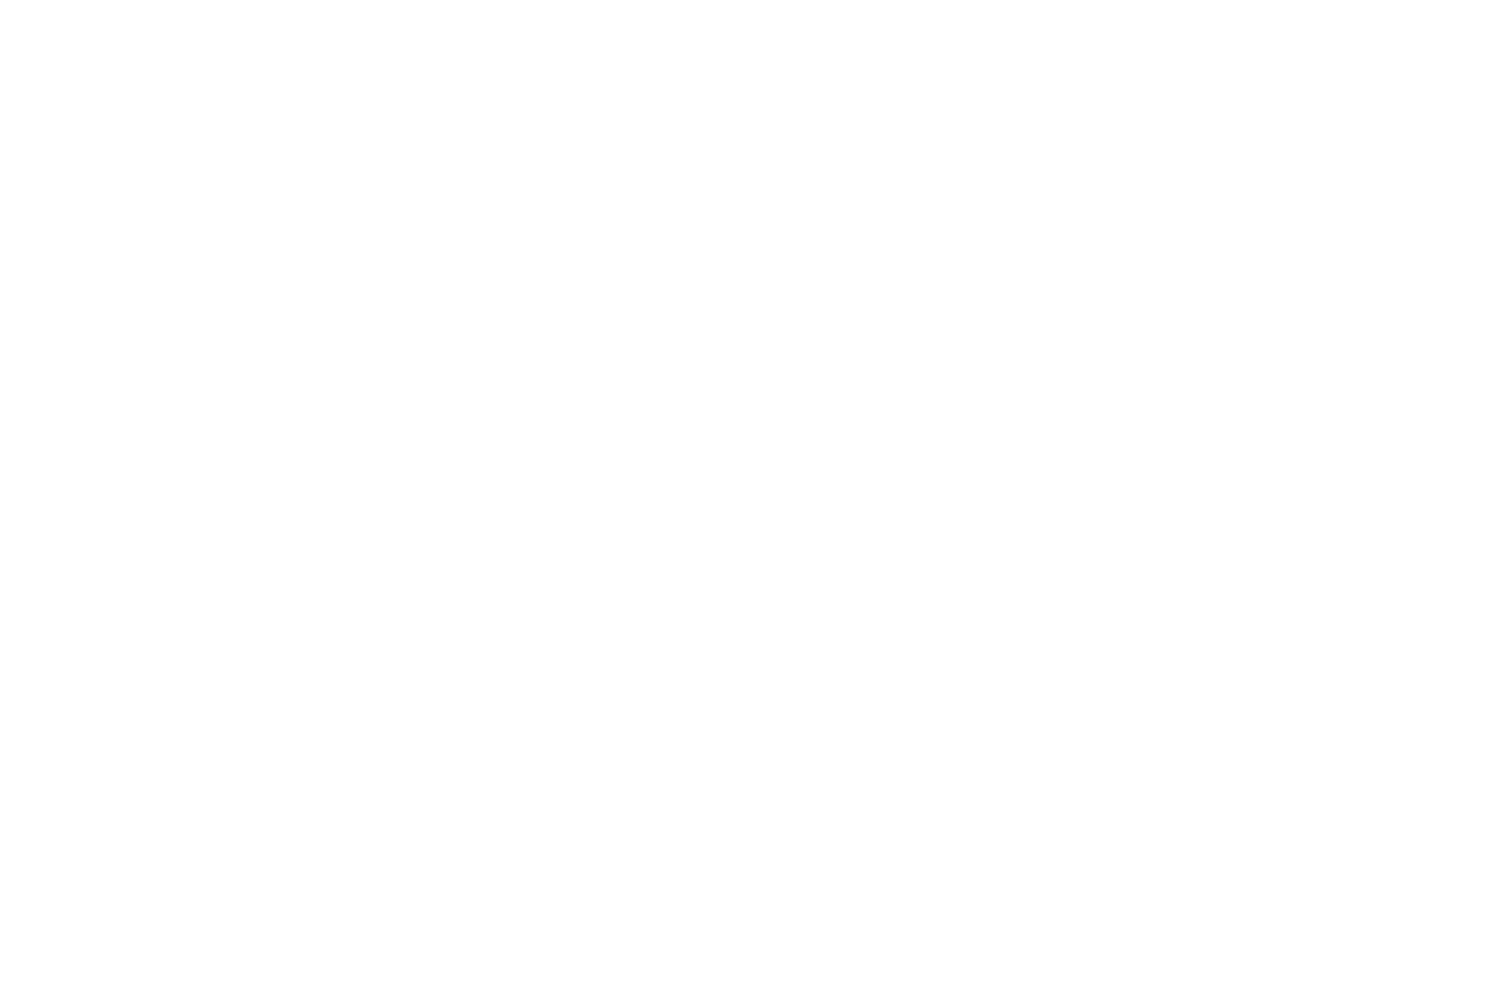 Dark Allure massage logo